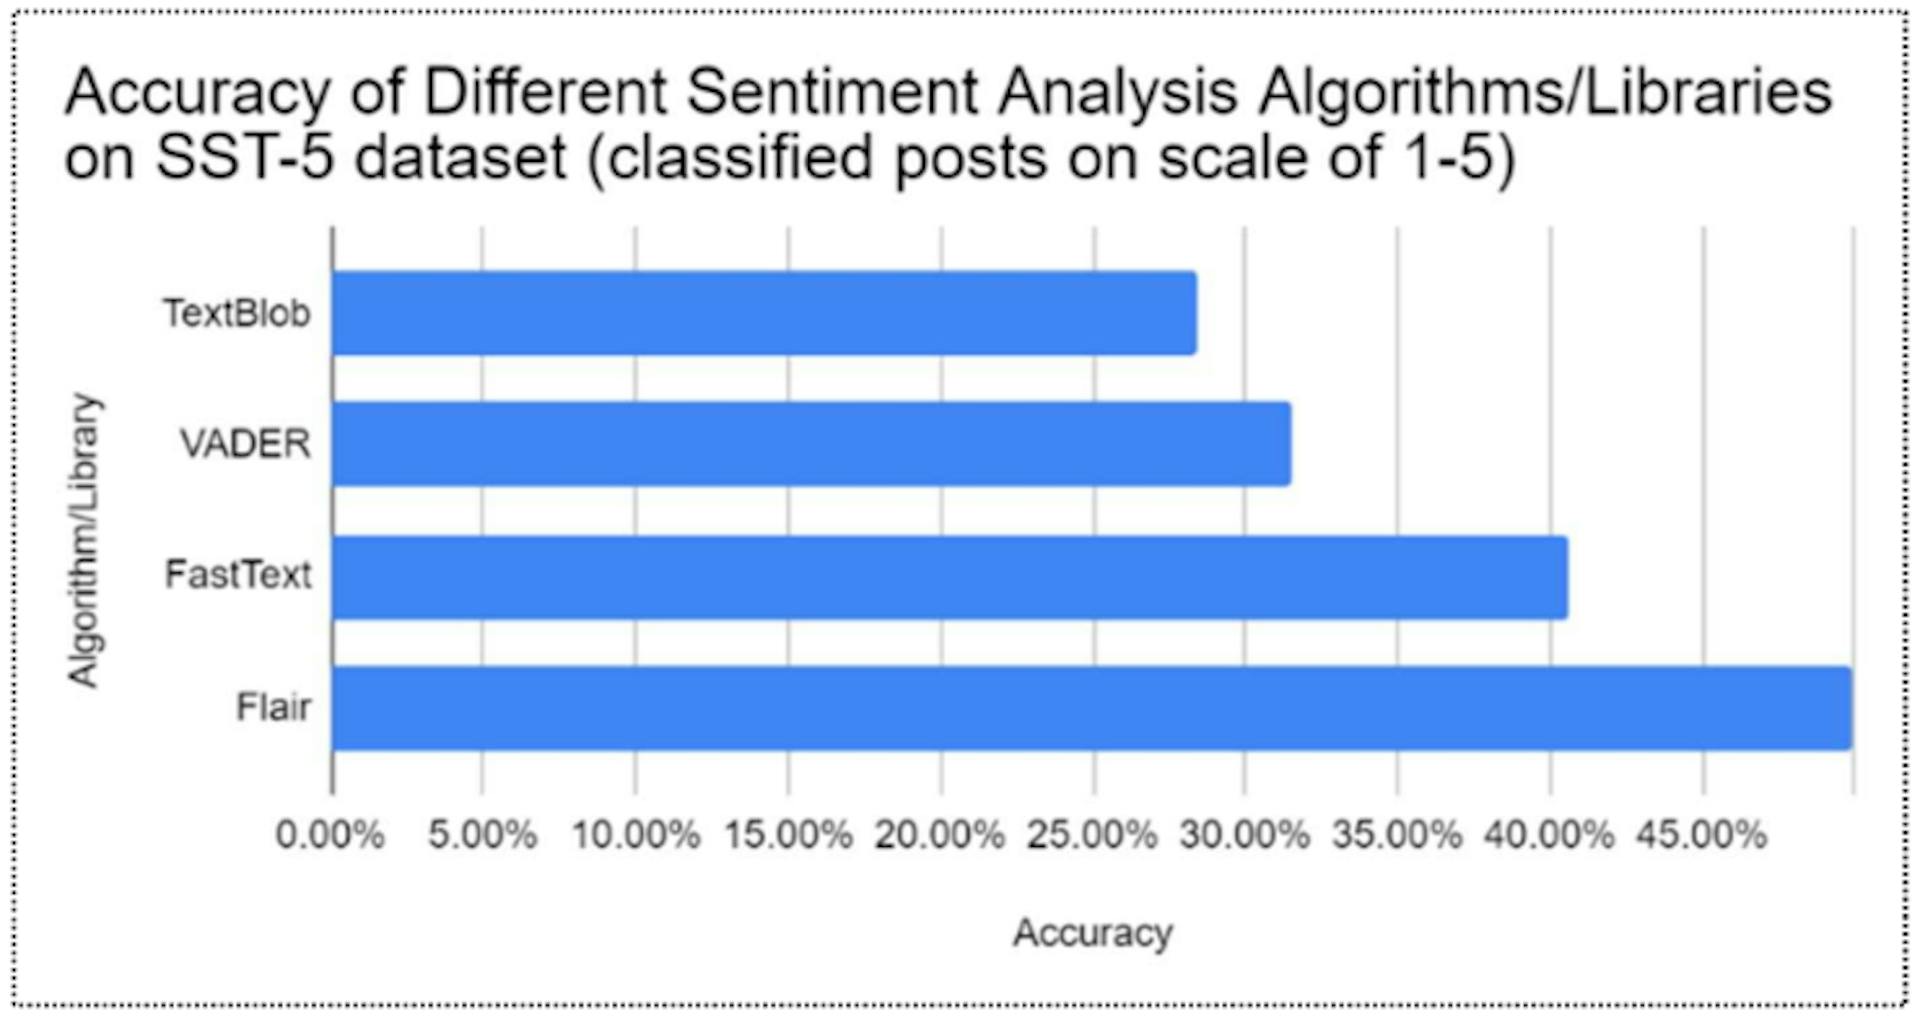 图4：不同情感分析算法在SST-5数据库上的准确率比较